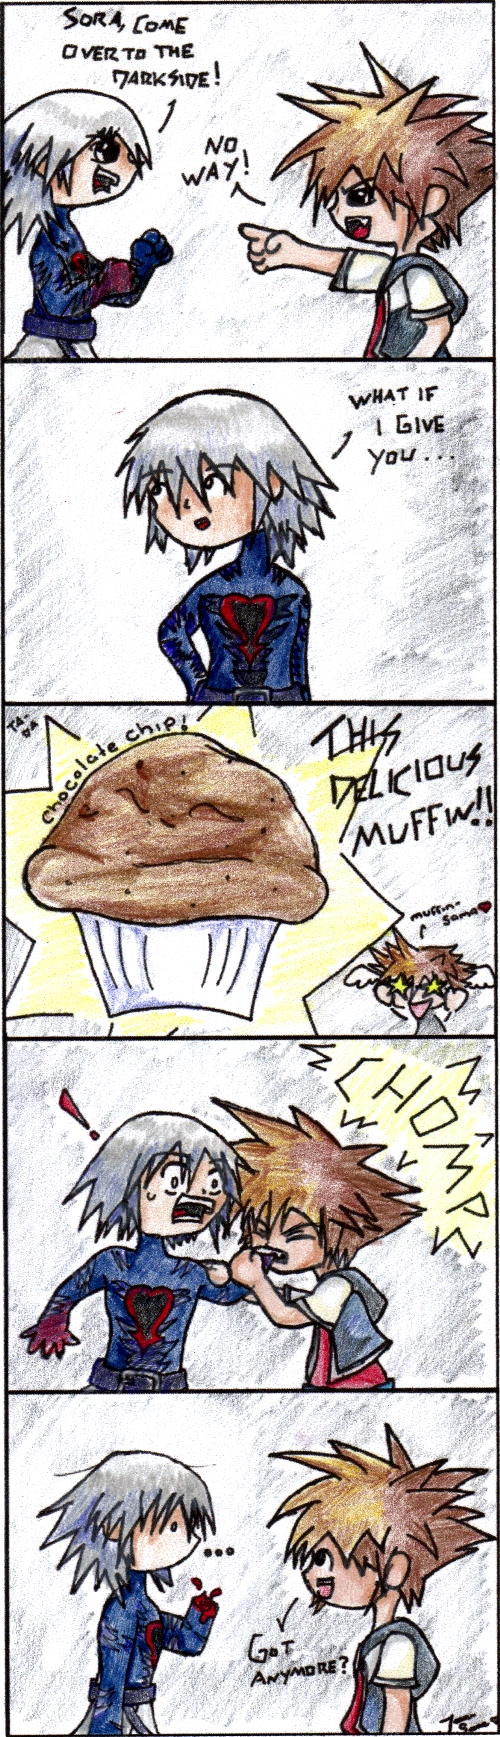 Sora Like Muffins :3 by JennSama